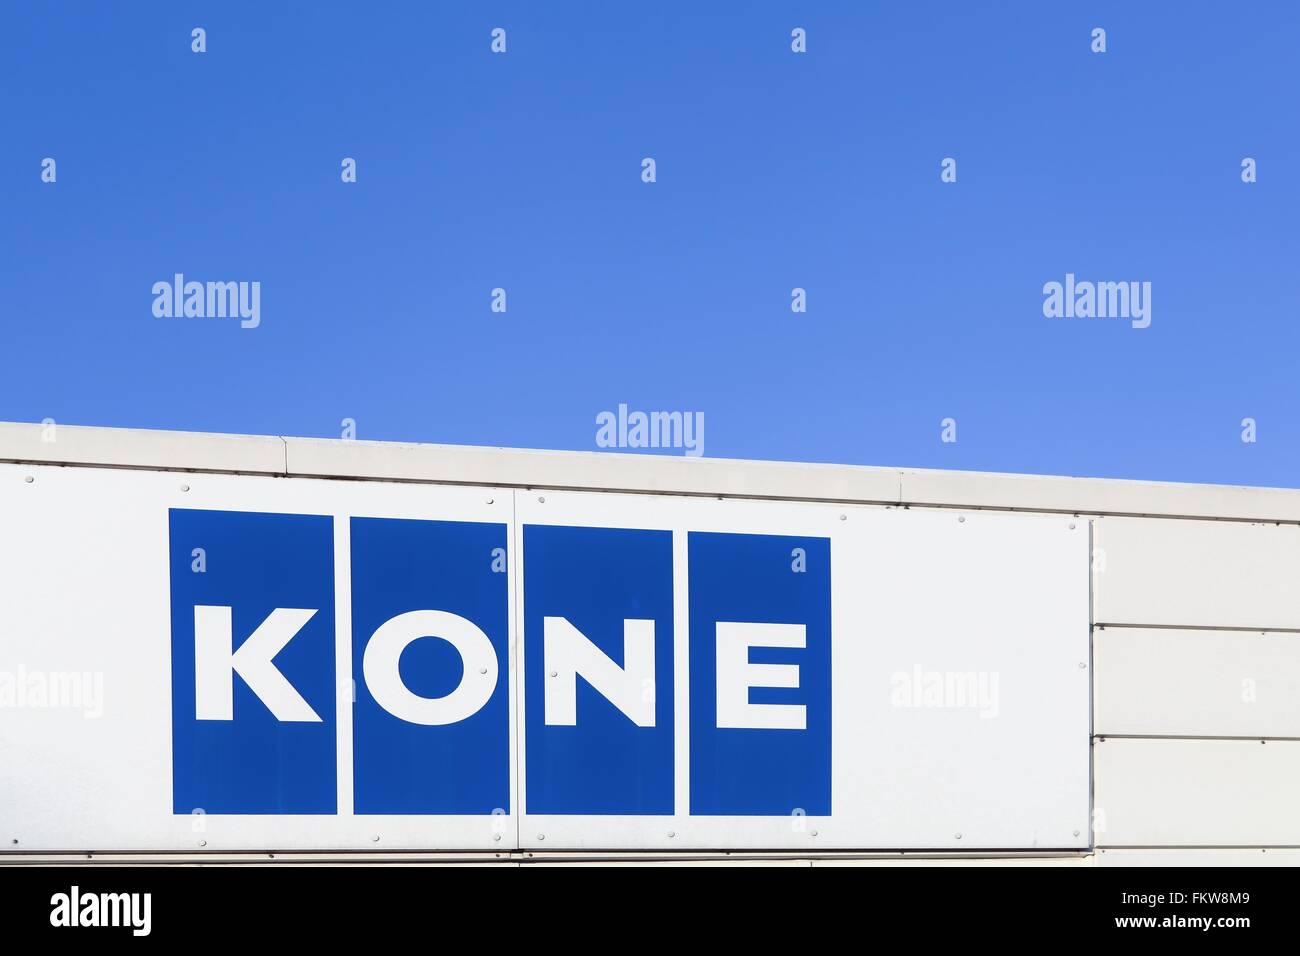 Kone logo a facade Stock Photo